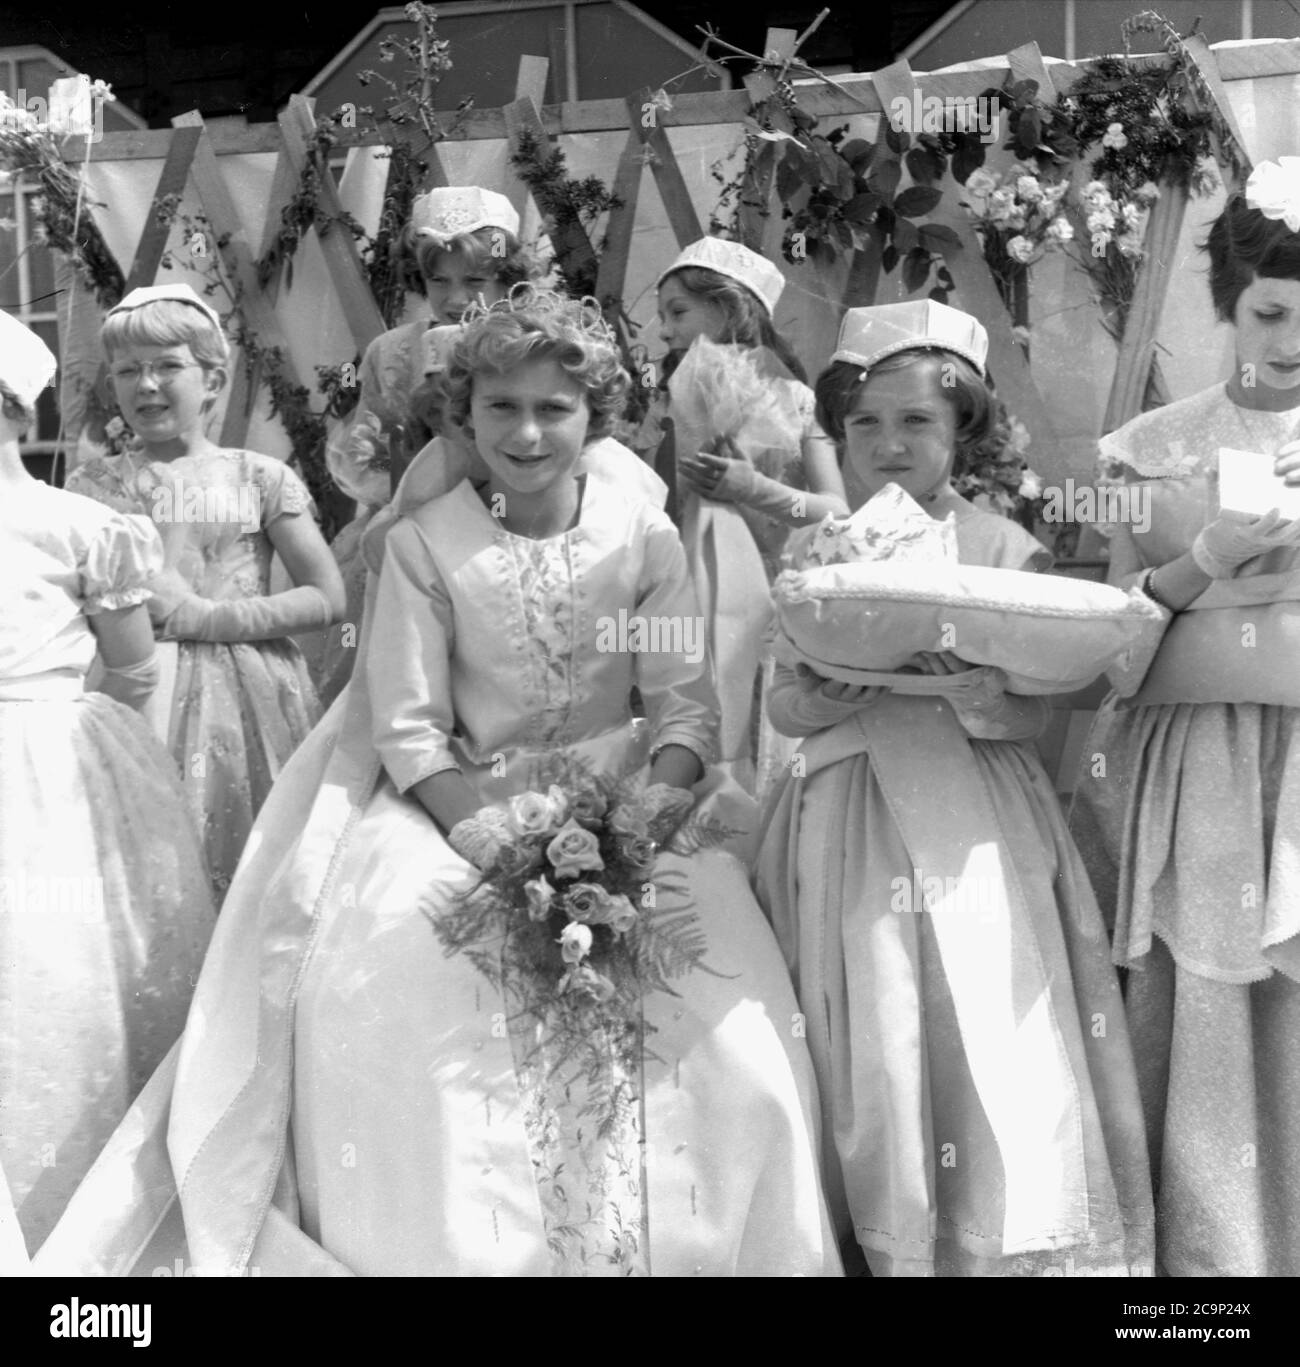 1950er Jahre, historisch, auf einer Plattform vor einem hölzernen Sportpavillon in Farnworth, Lancashire, versammeln sich junge Mädchen in Kleidern zur Rose Queen Zeremonie. Die "Rosenkönigin" führte die traditionelle Prozession oder Parade, die als "Walking Day" bekannt war, Feste, die in dieser Zeit im Nordwesten Englands, Großbritannien, üblich waren. Ein jährliches Ereignis, einige stammen aus den 1830er Jahren, wo sie Kirchenparaden waren, die mit den Kindersonntagsschulen verbunden waren und viele werden noch heute abgehalten. Stockfoto